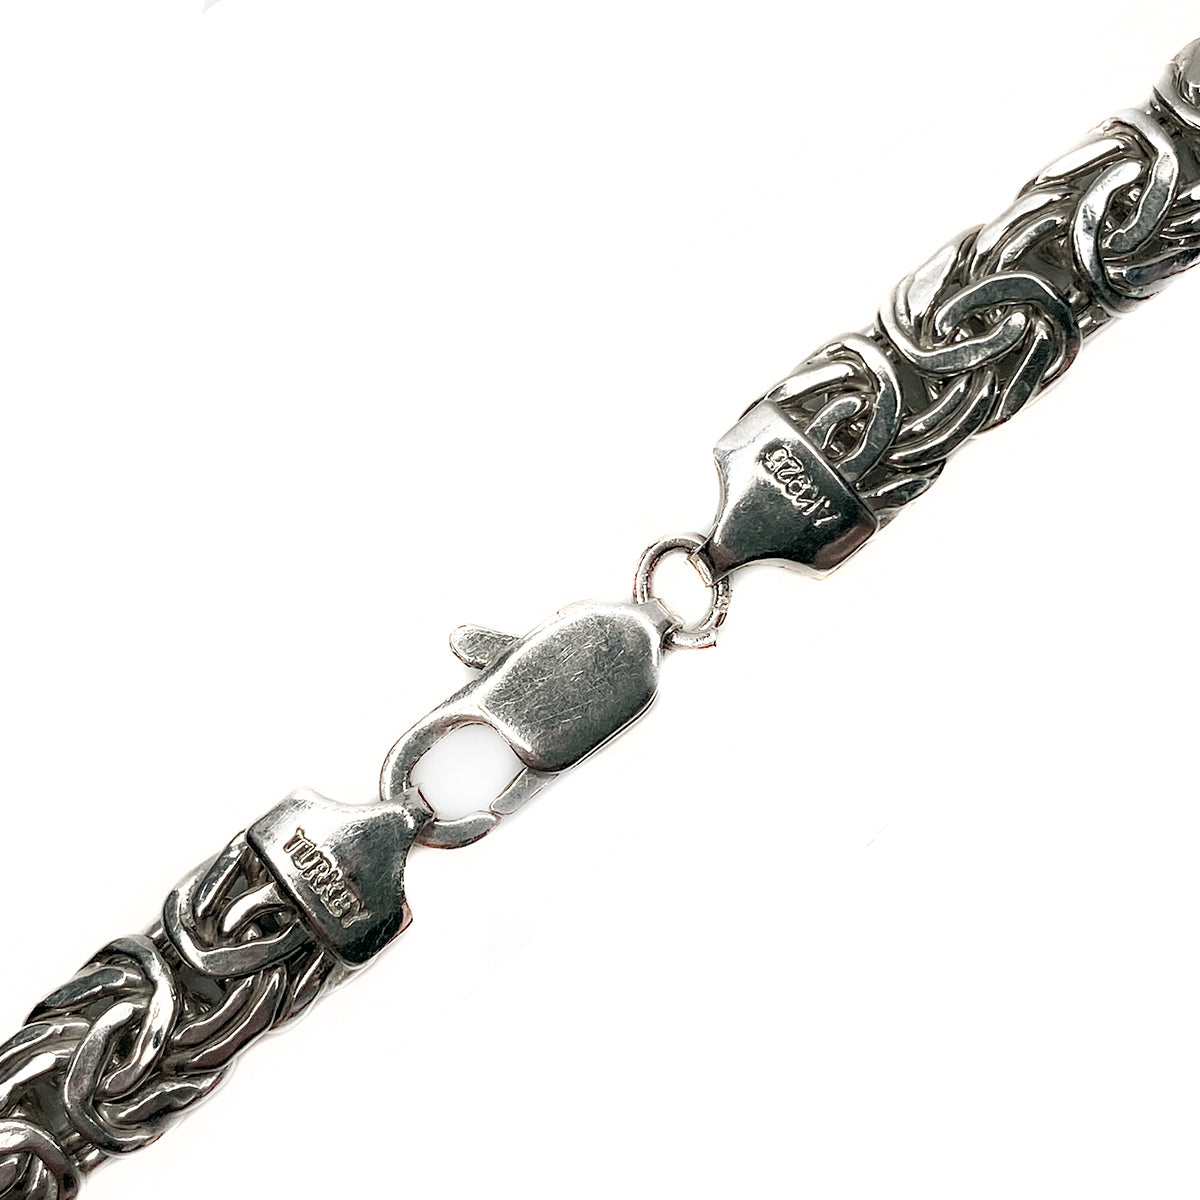 Silver Byzantine Necklace